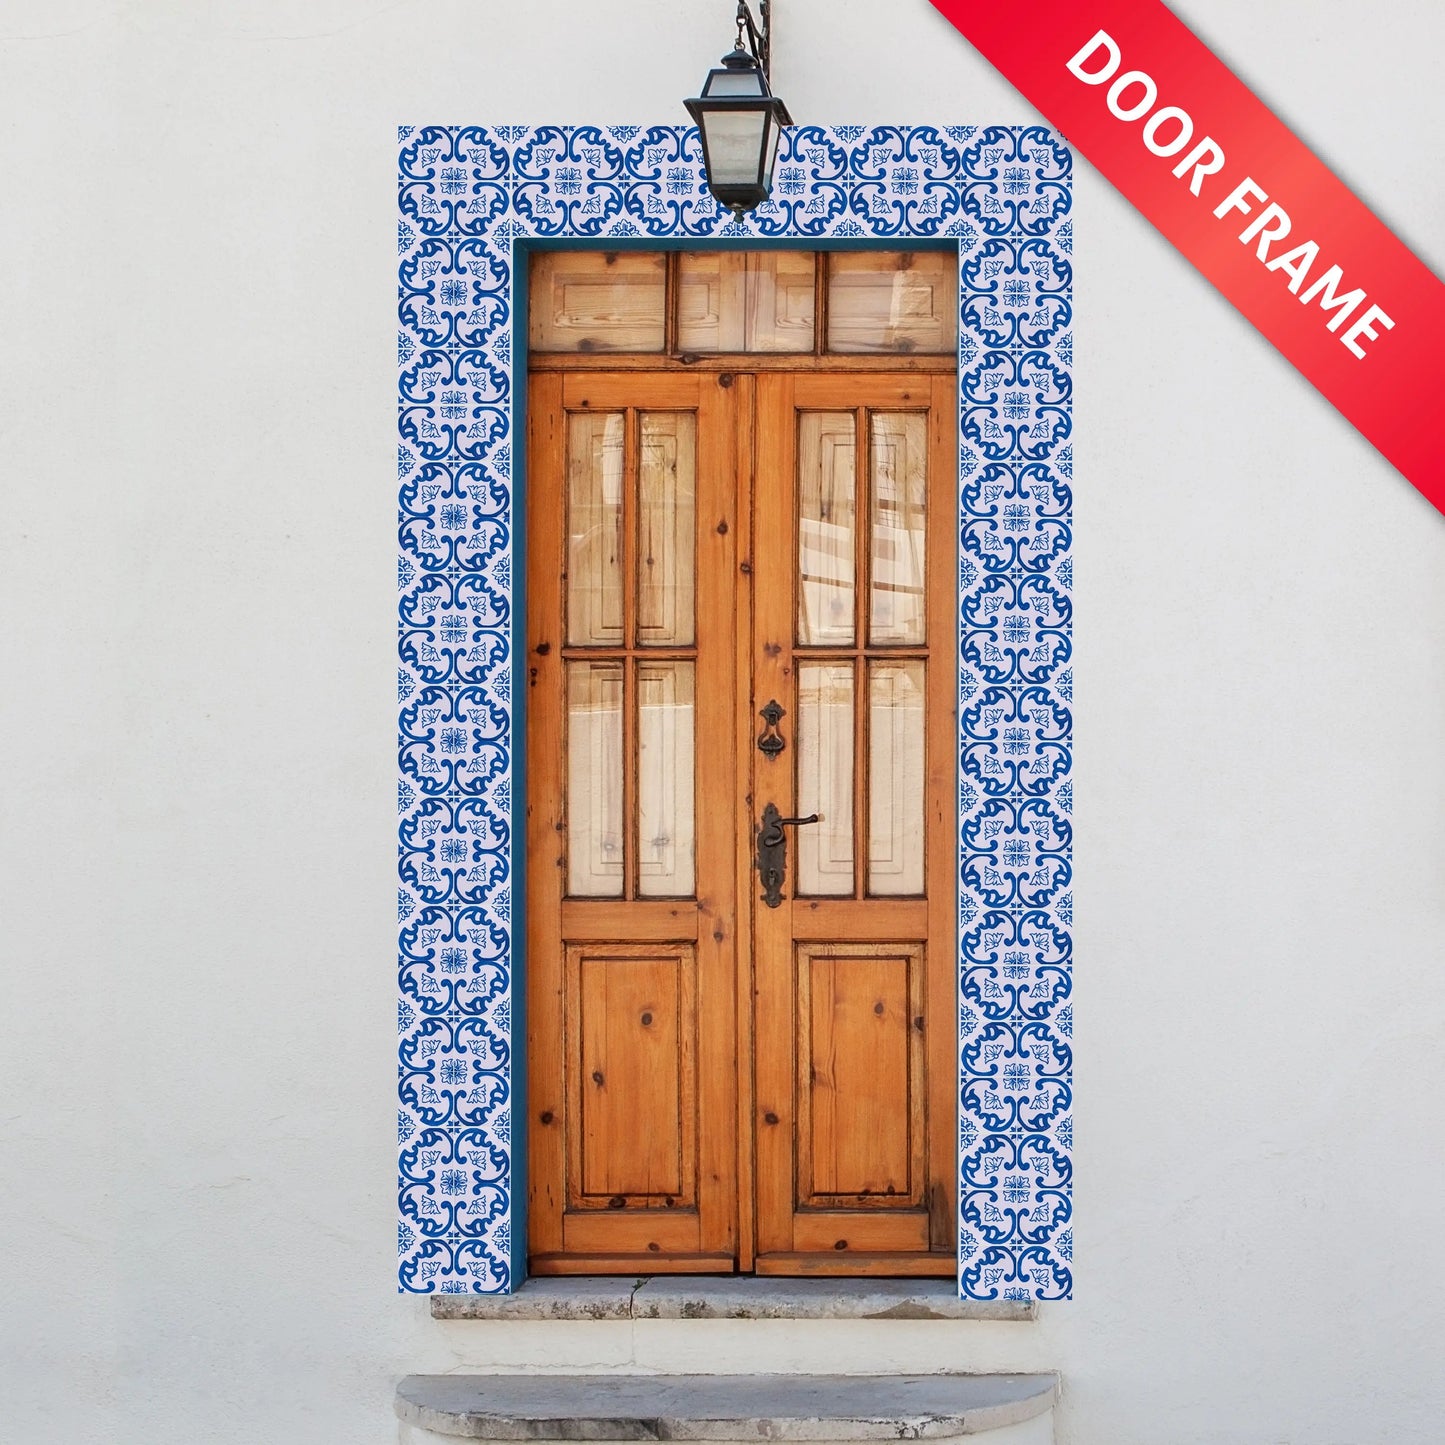 Portuguese Inspired Azulejos Delicate Blue Ceramic Tile Door Frame-Rooster Camisa